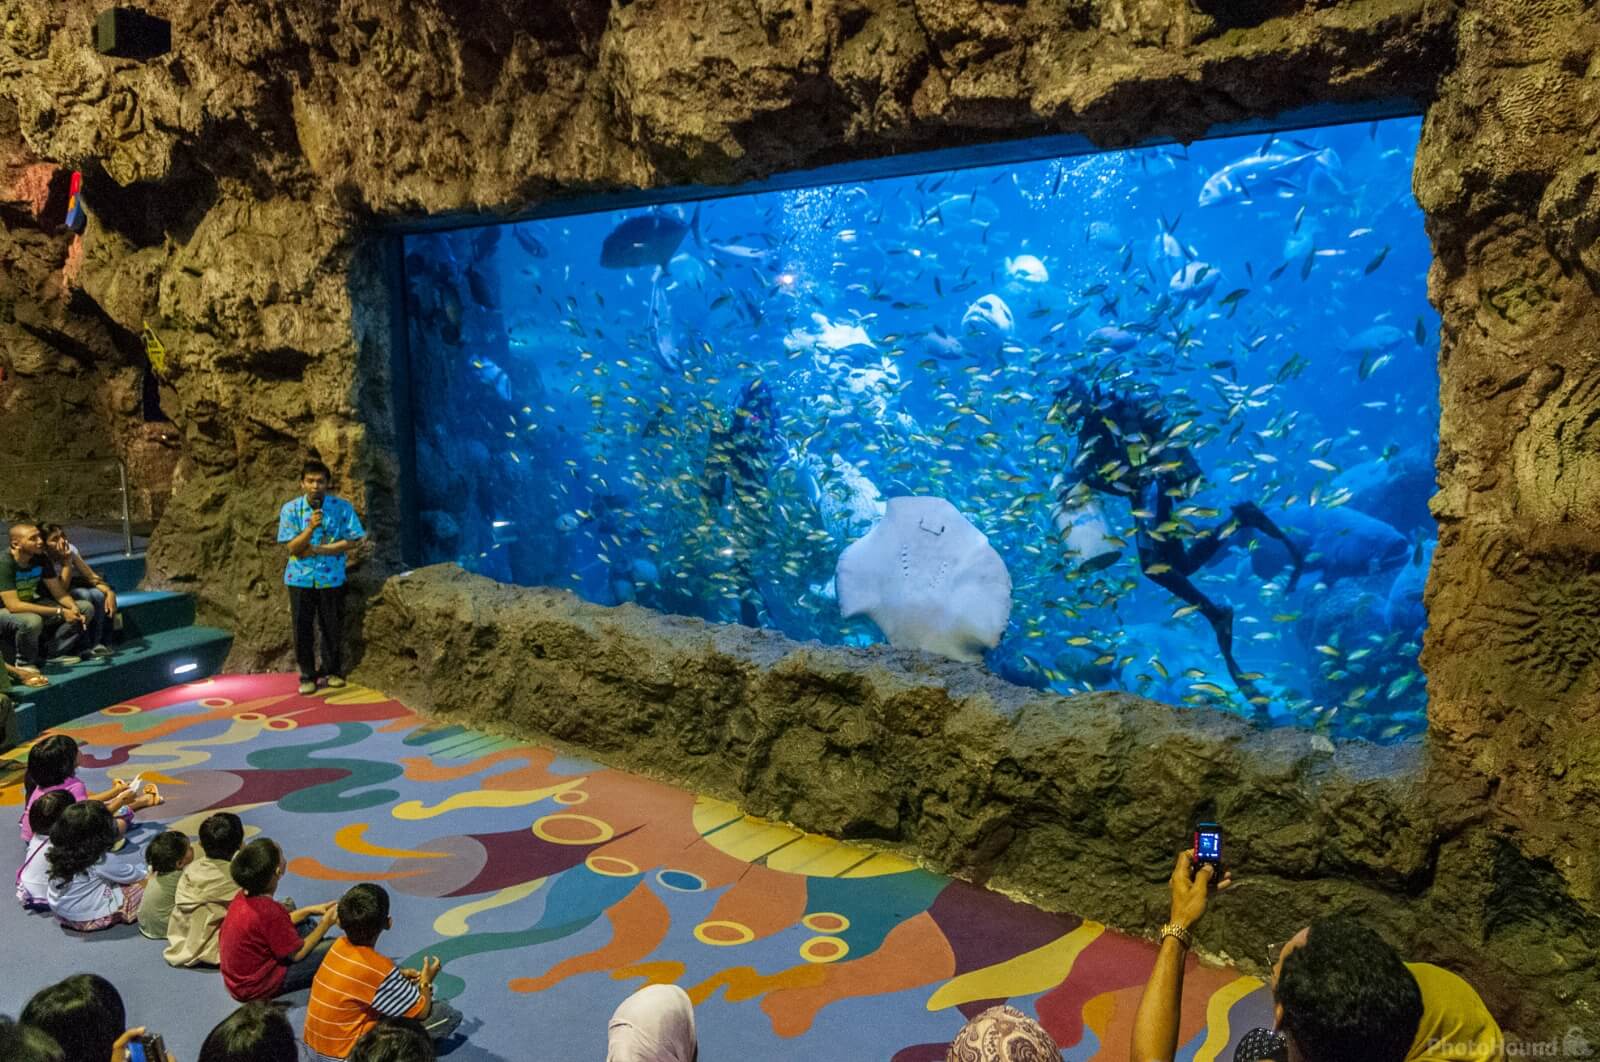 Jakarta Aquarium photo spot, Kecamatan Grogol petamburan